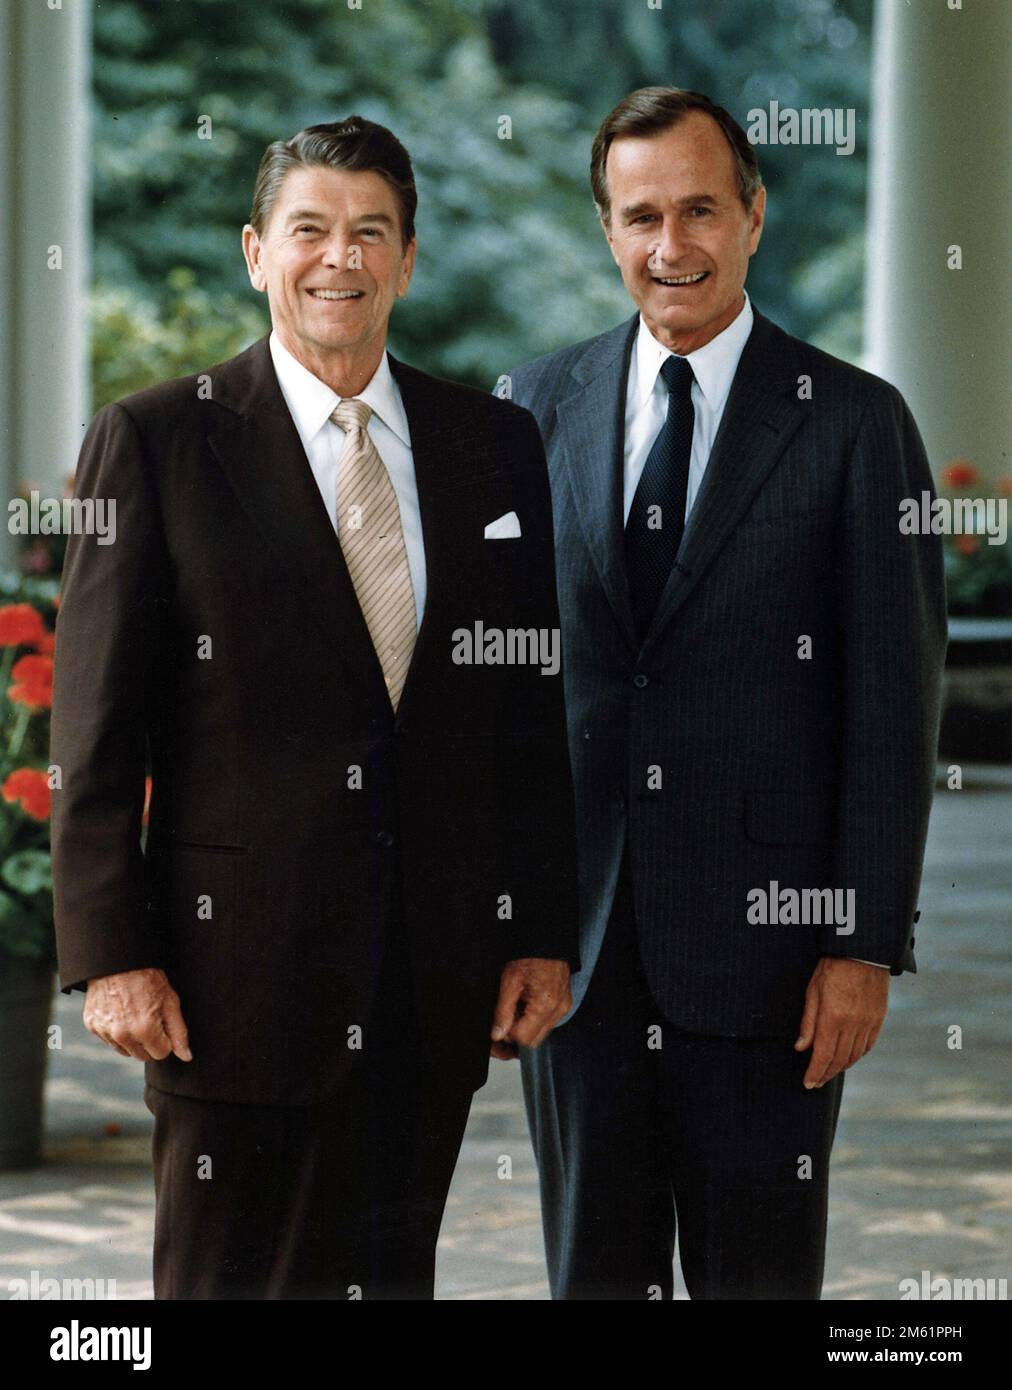 Le portrait officiel du président Reagan et du vice-président George Bush, 1981 Banque D'Images